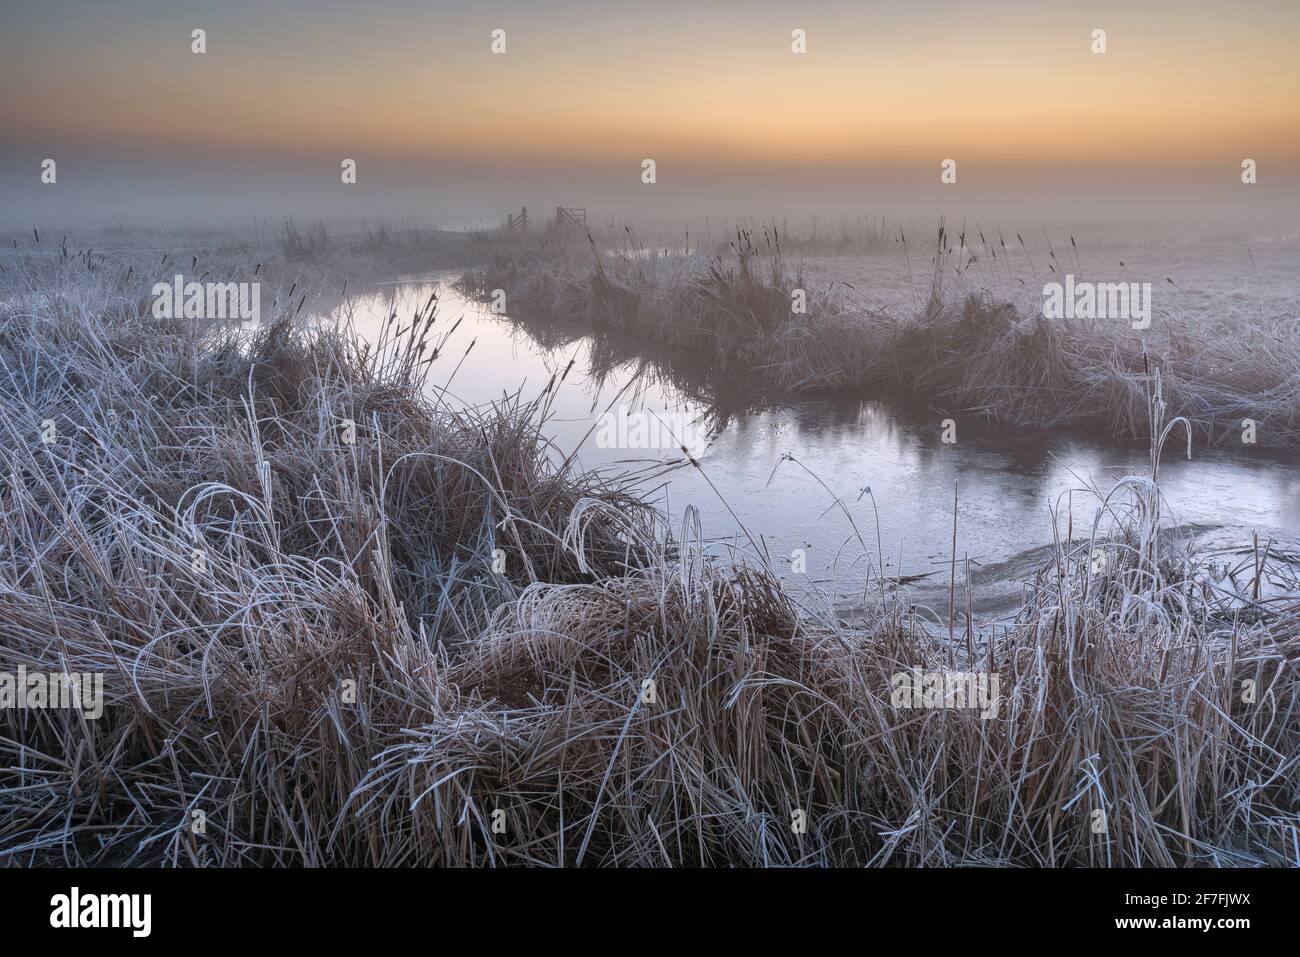 Fossé inondé et gel sur le marais de pâturage côtier, Réserve naturelle nationale d'Elmley, île de Shepey, Kent, Angleterre, Royaume-Uni, Europe Banque D'Images